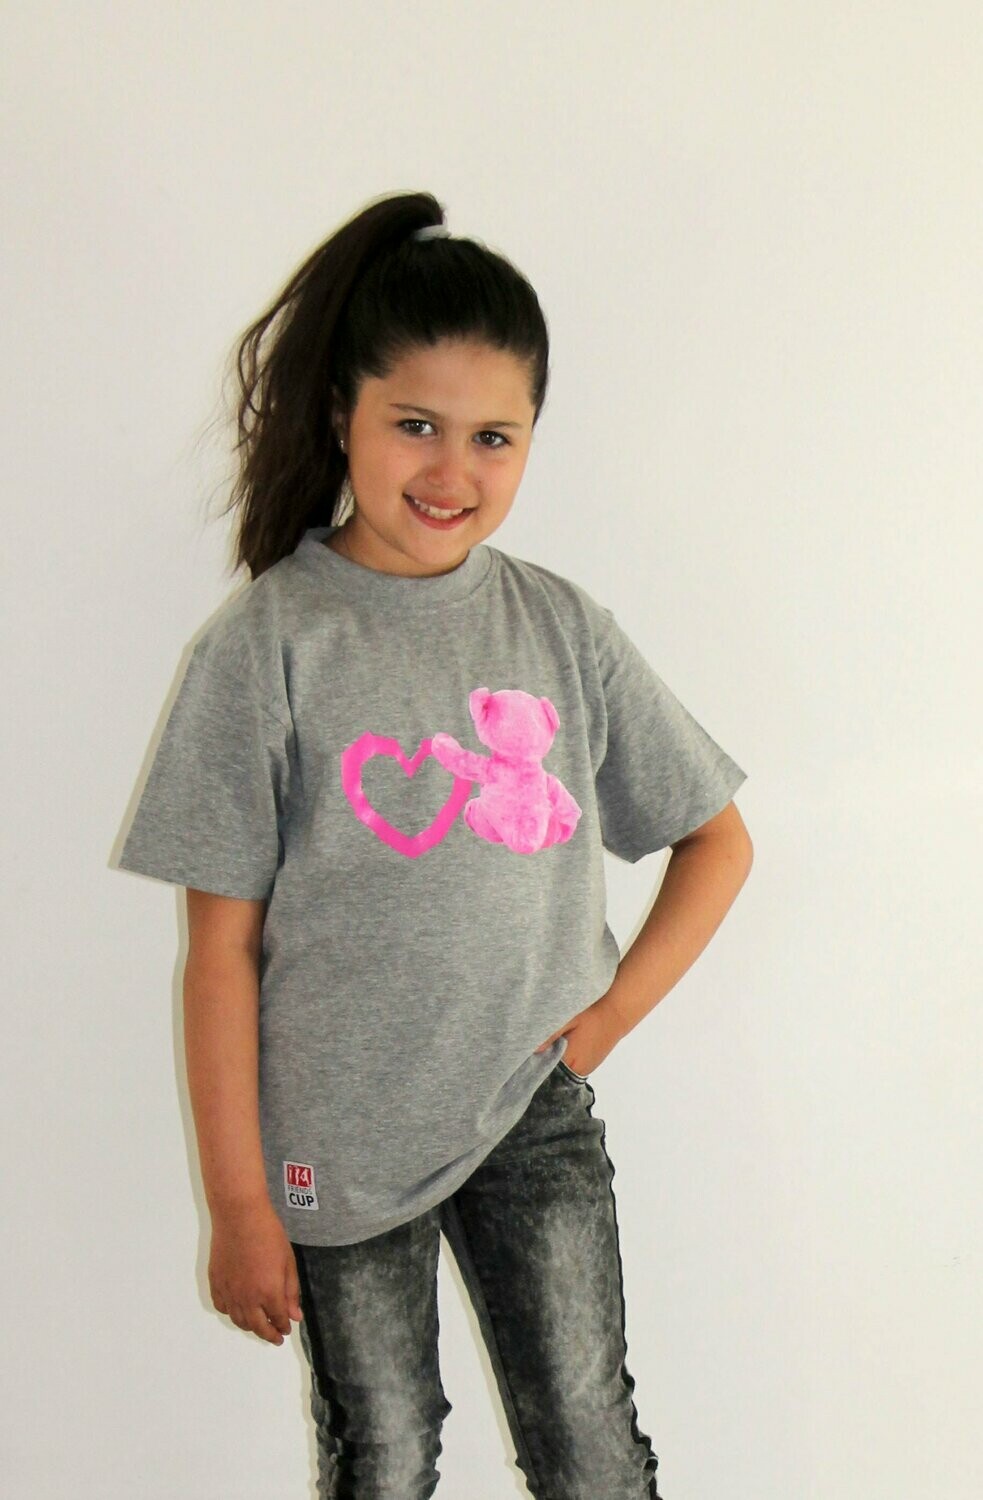 Kids-Shirt Grau mit Aufdruck "Bärchen mit Herz" in Pink